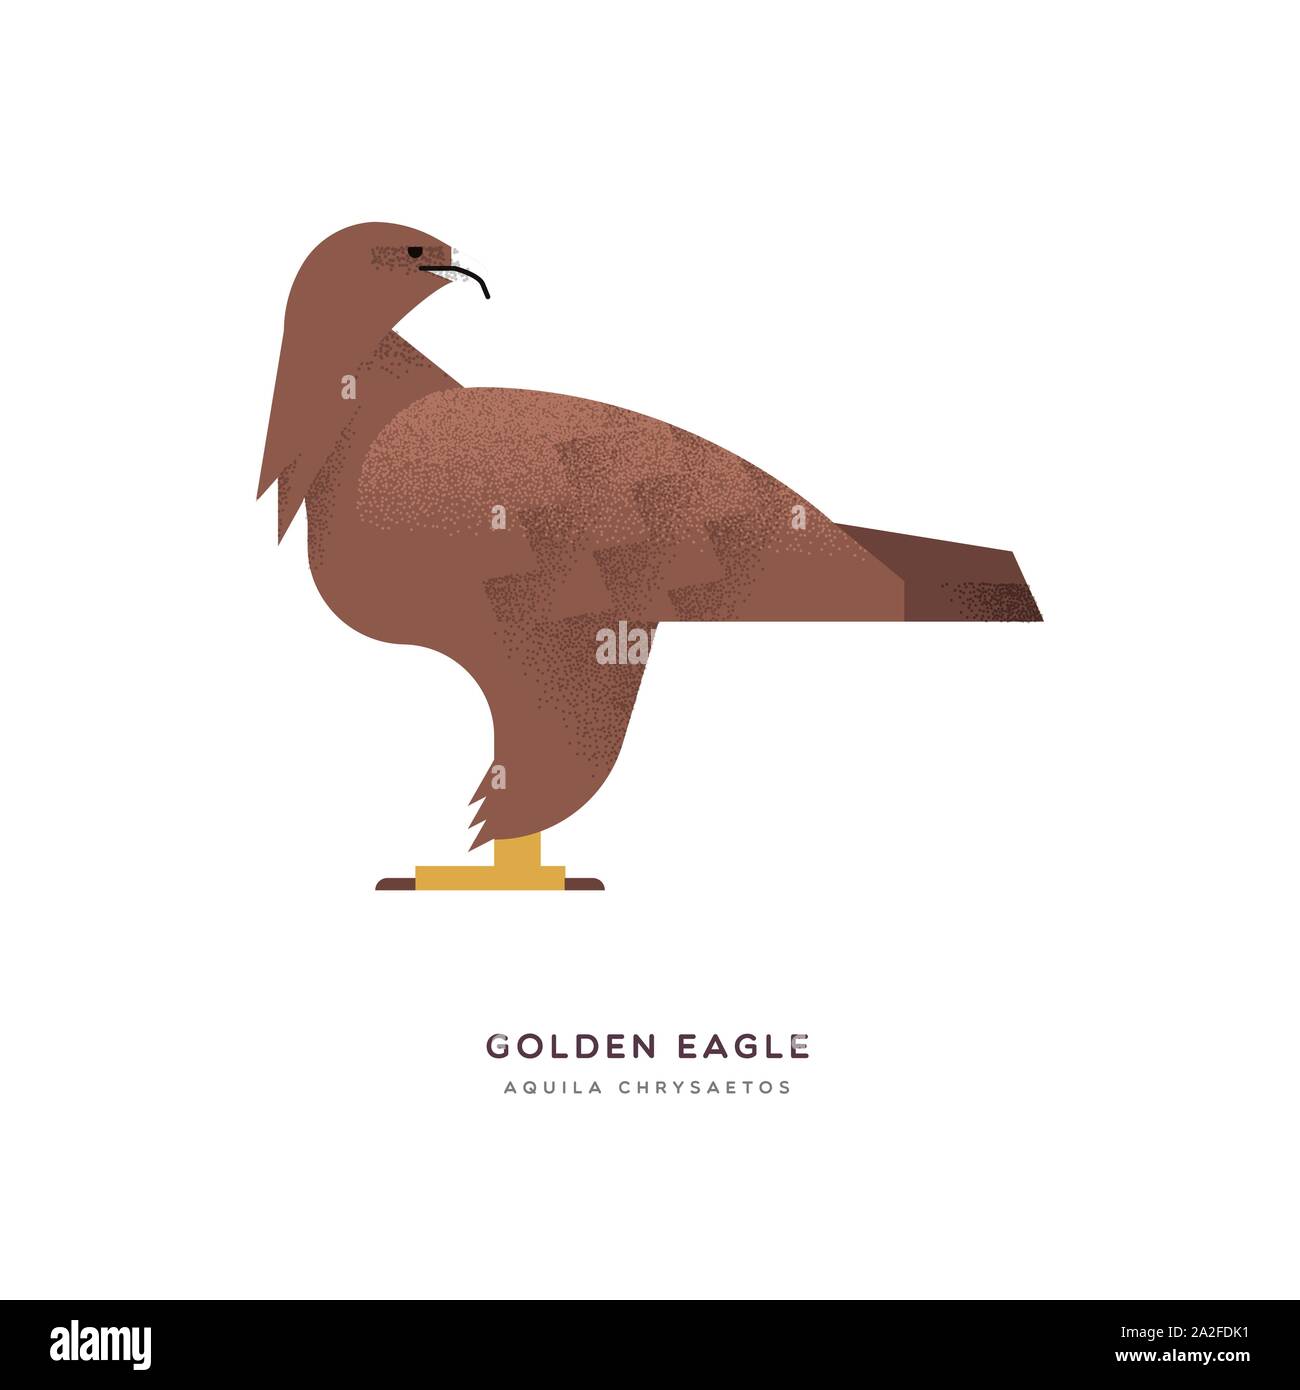 Golden Eagle illustrazione isolato su sfondo bianco, sud america zoo bird concetto animale. Istruzione di progettazione della fauna selvatica con specie di fauna nome lab Illustrazione Vettoriale